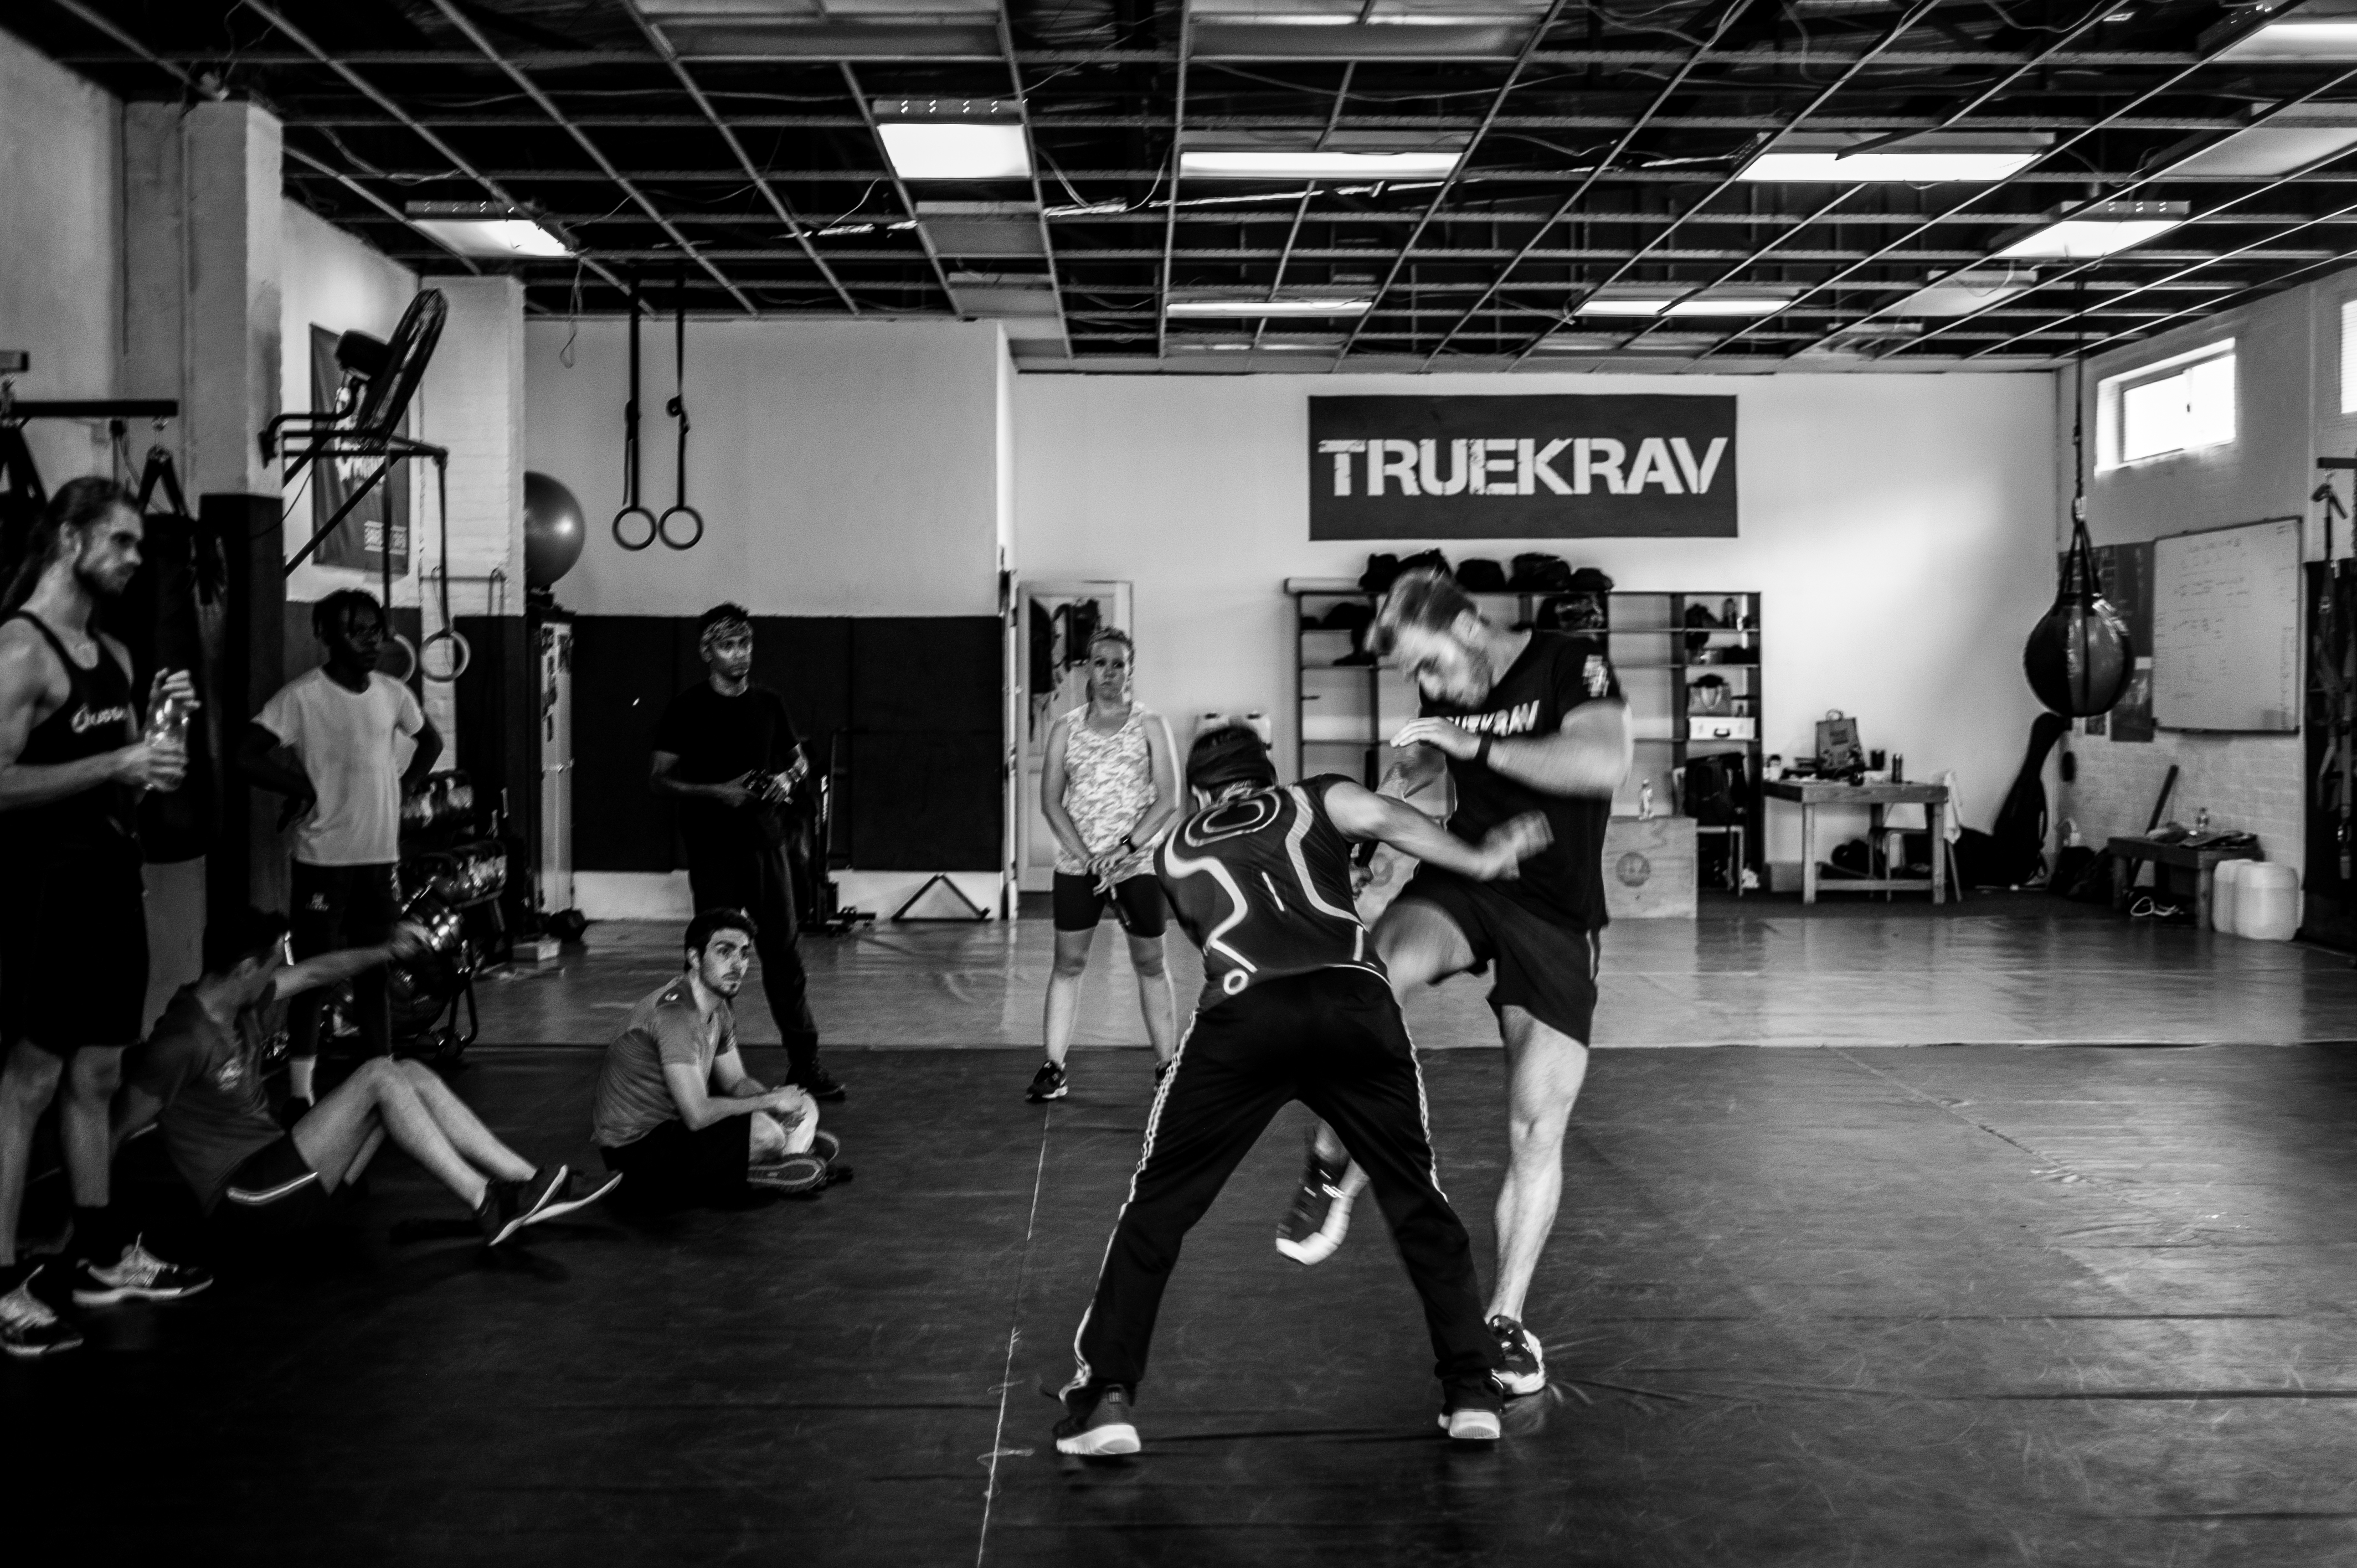 Truekrav training session fight demonstration